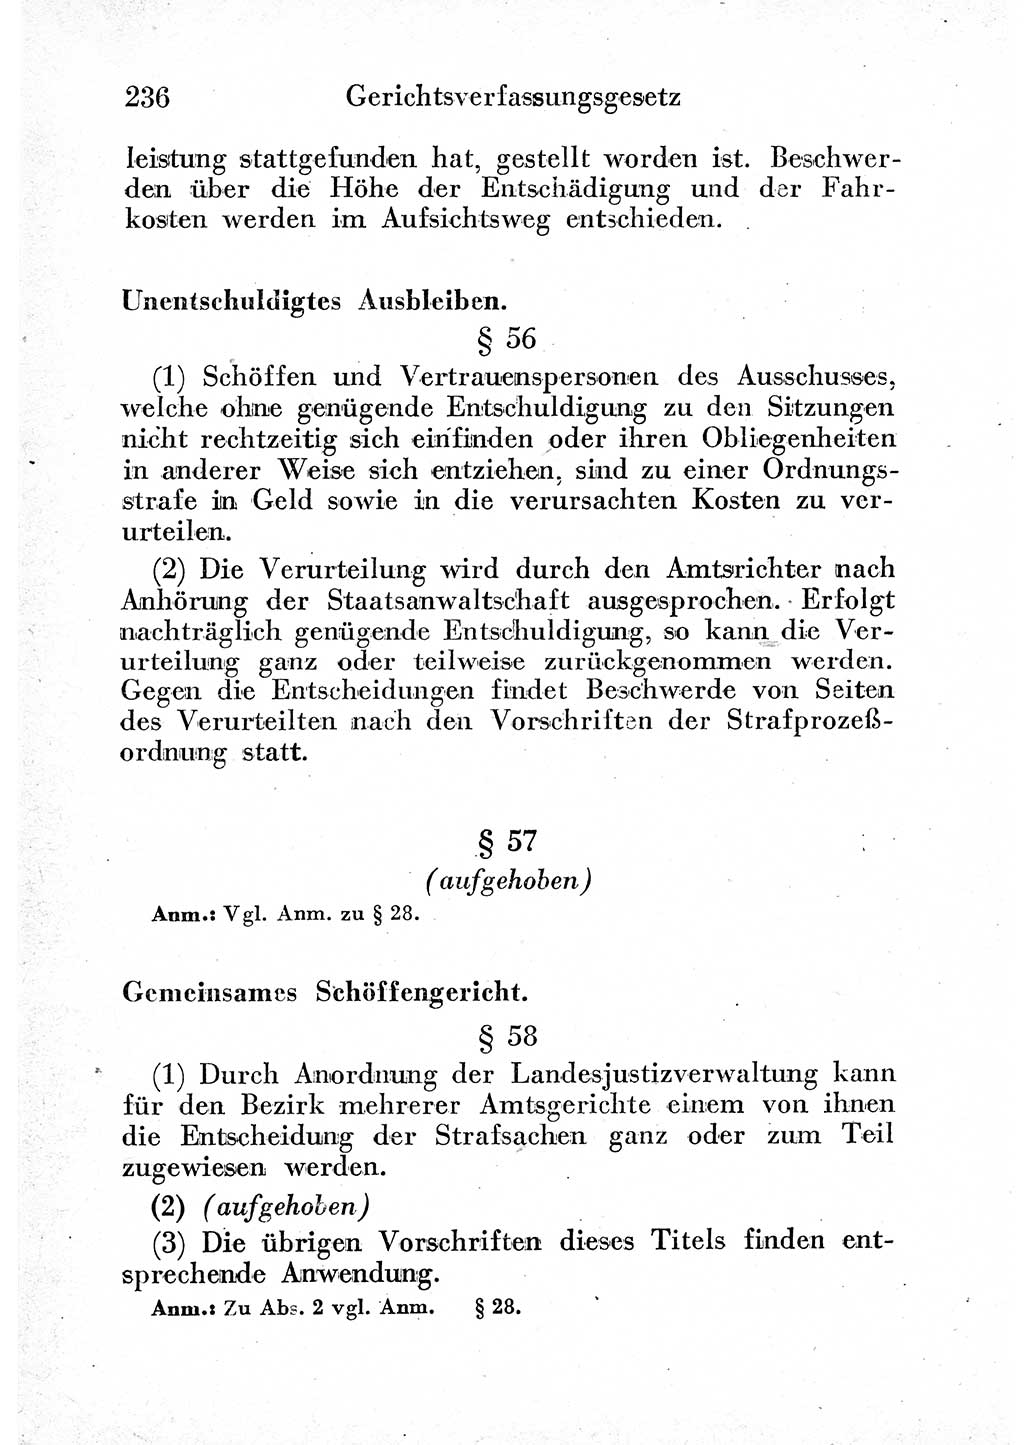 Strafprozeßordnung (StPO), Gerichtsverfassungsgesetz (GVG) und zahlreiche Nebengesetze der sowjetischen Besatzungszone (SBZ) in Deutschland 1949, Seite 236 (StPO GVG Ges. SBZ Dtl. 1949, S. 236)